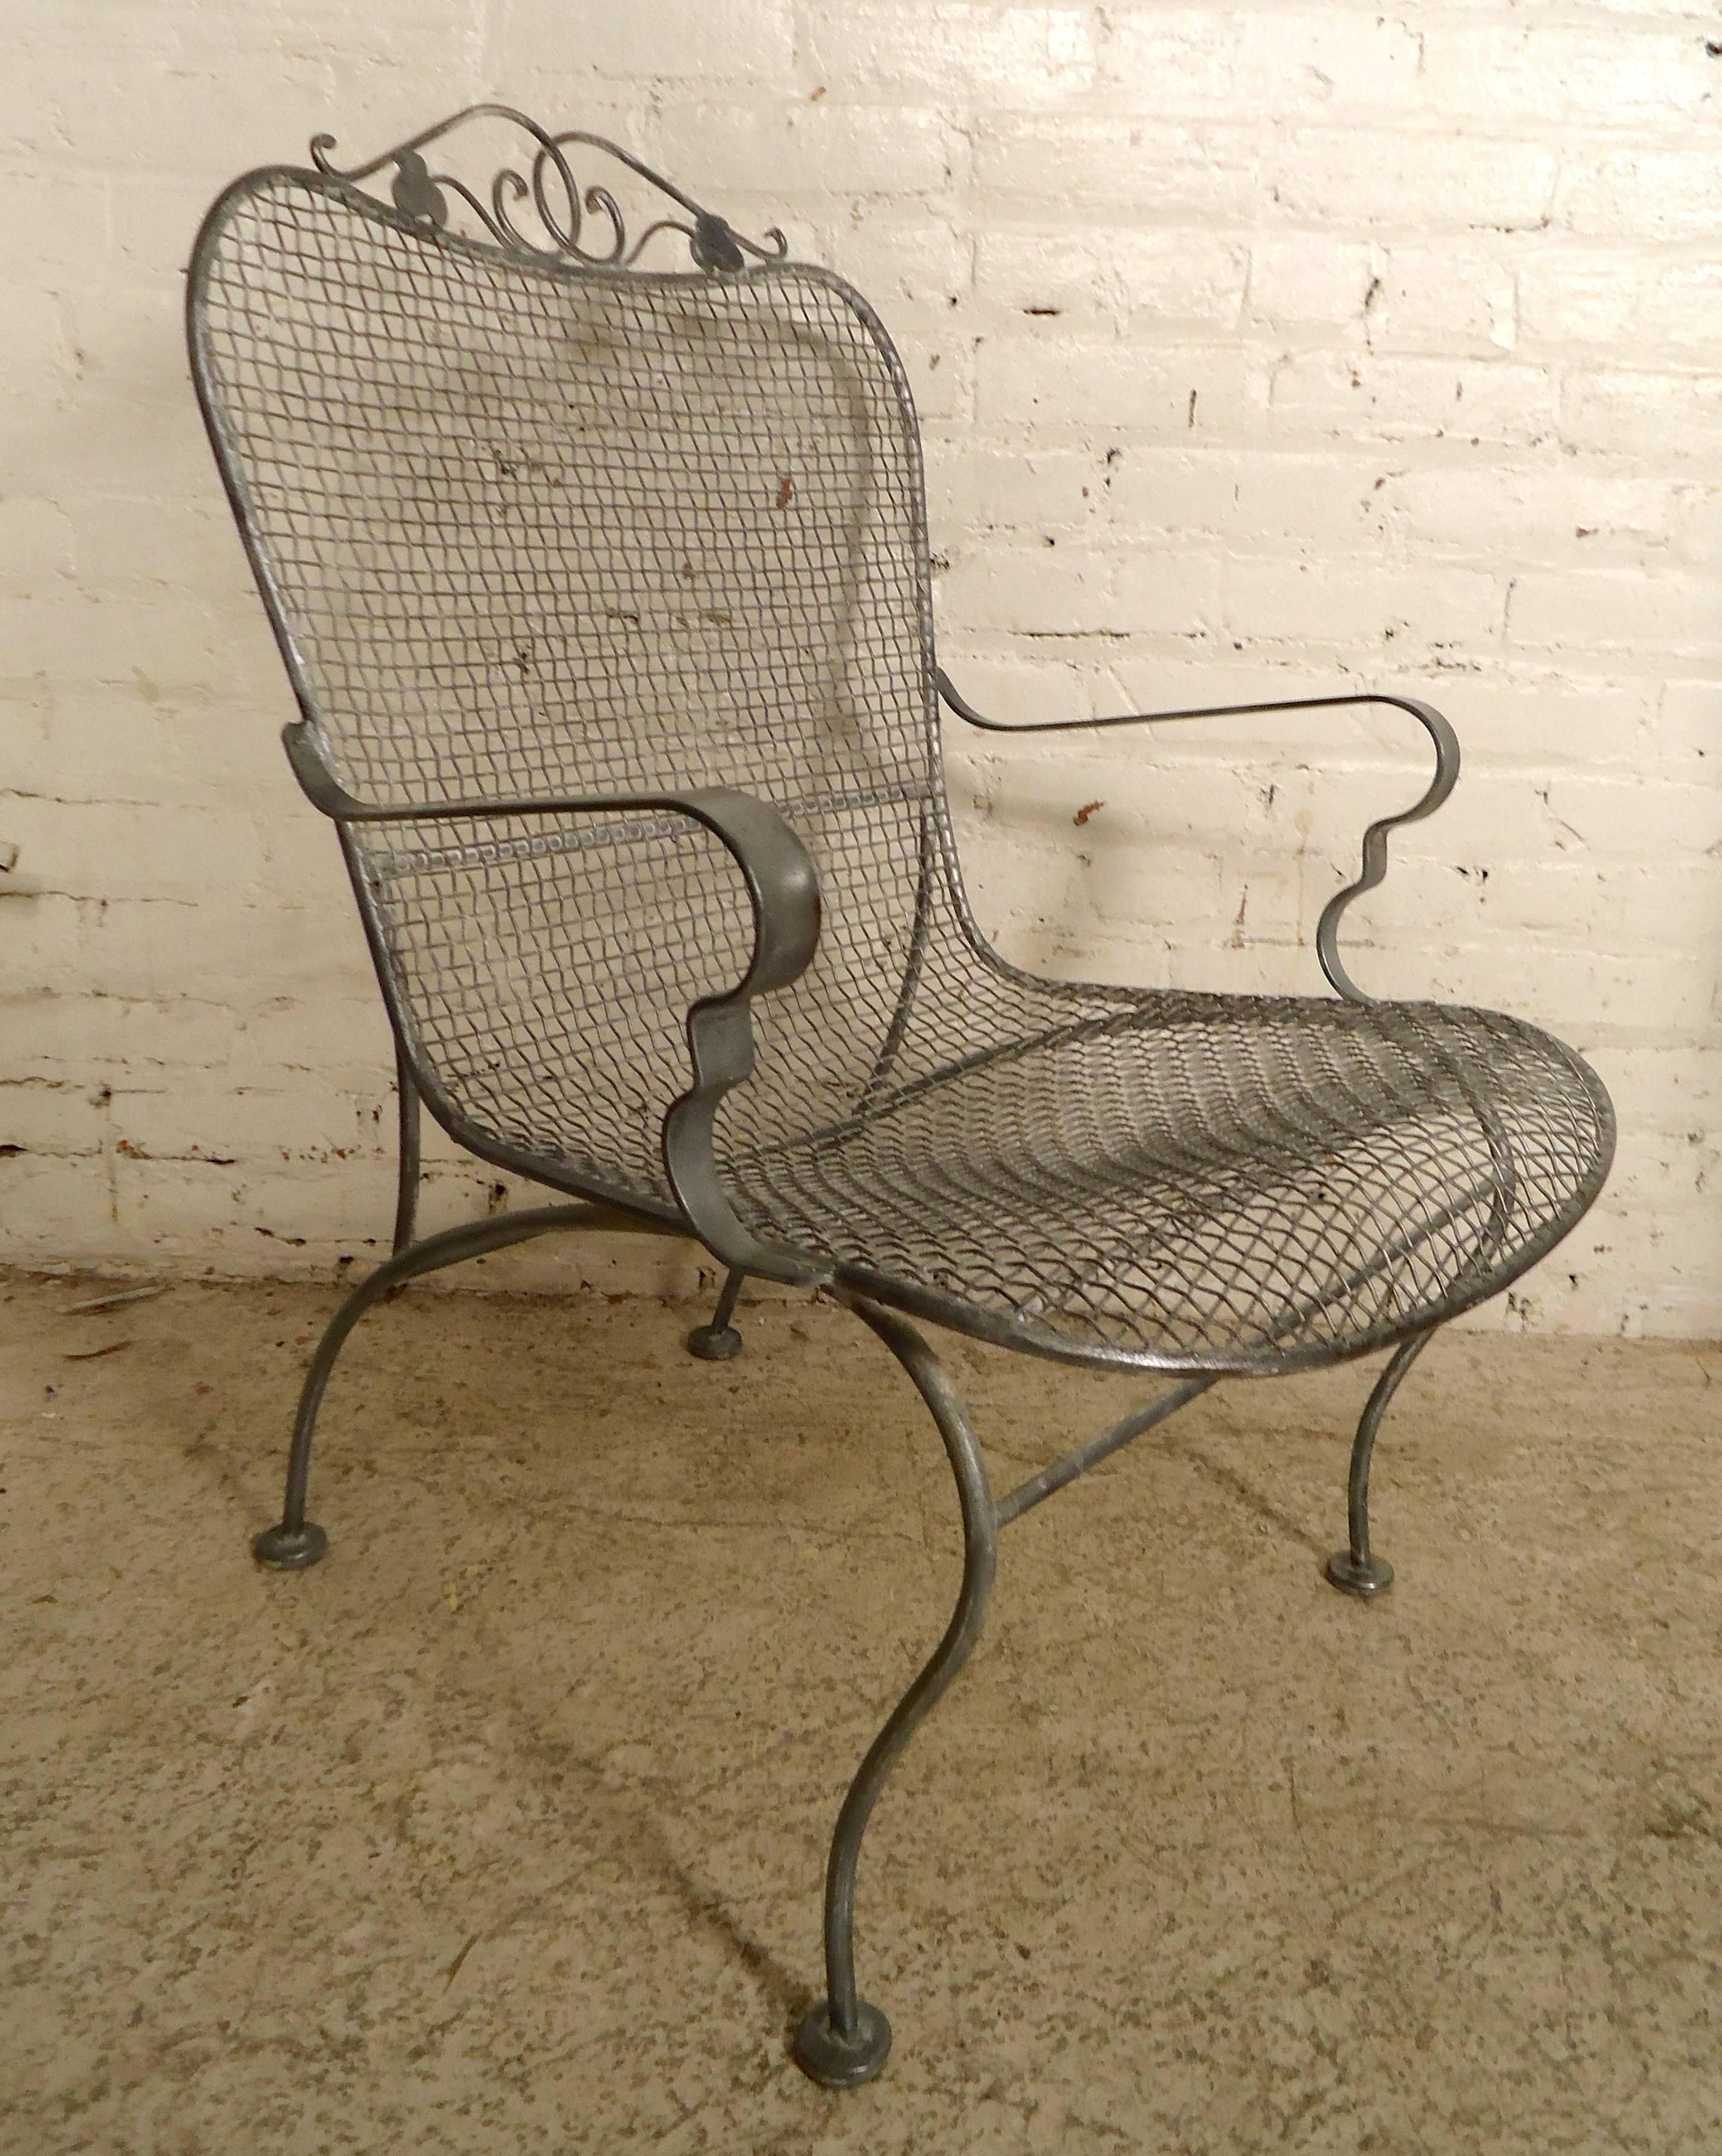 vintage metal chairs